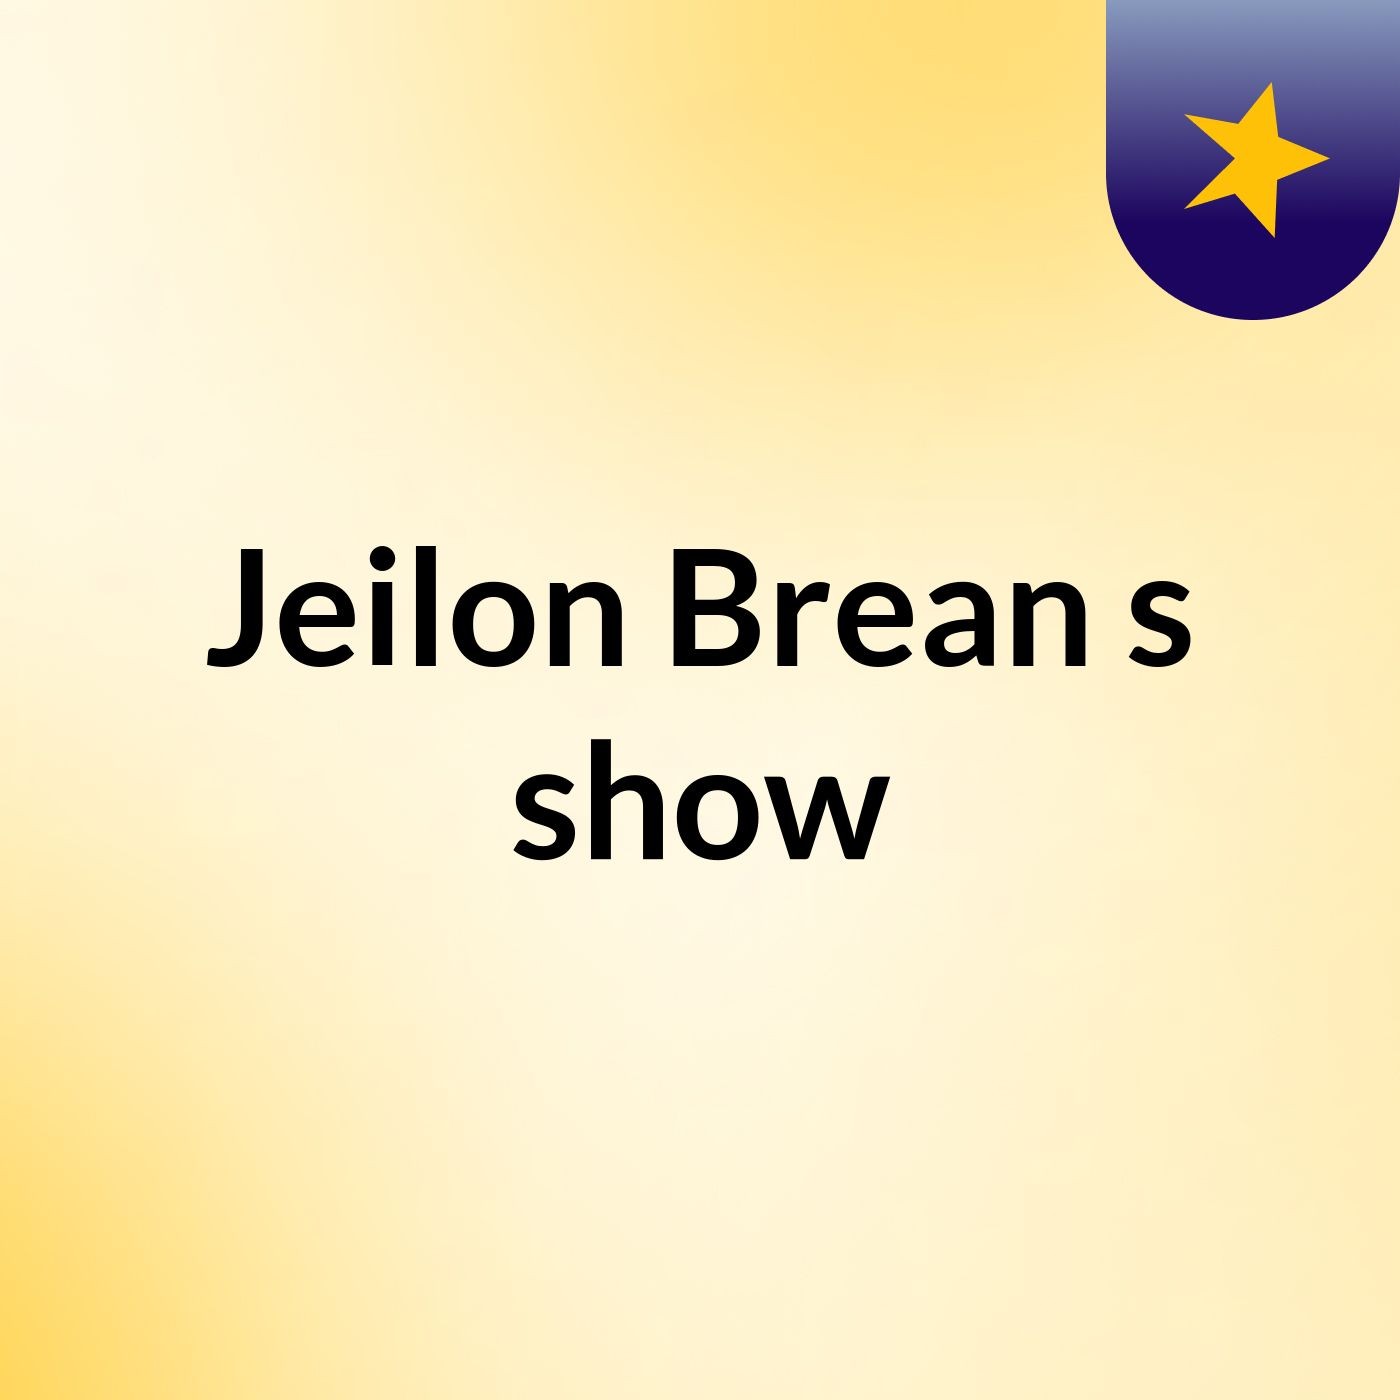 Jeilon Brean's show